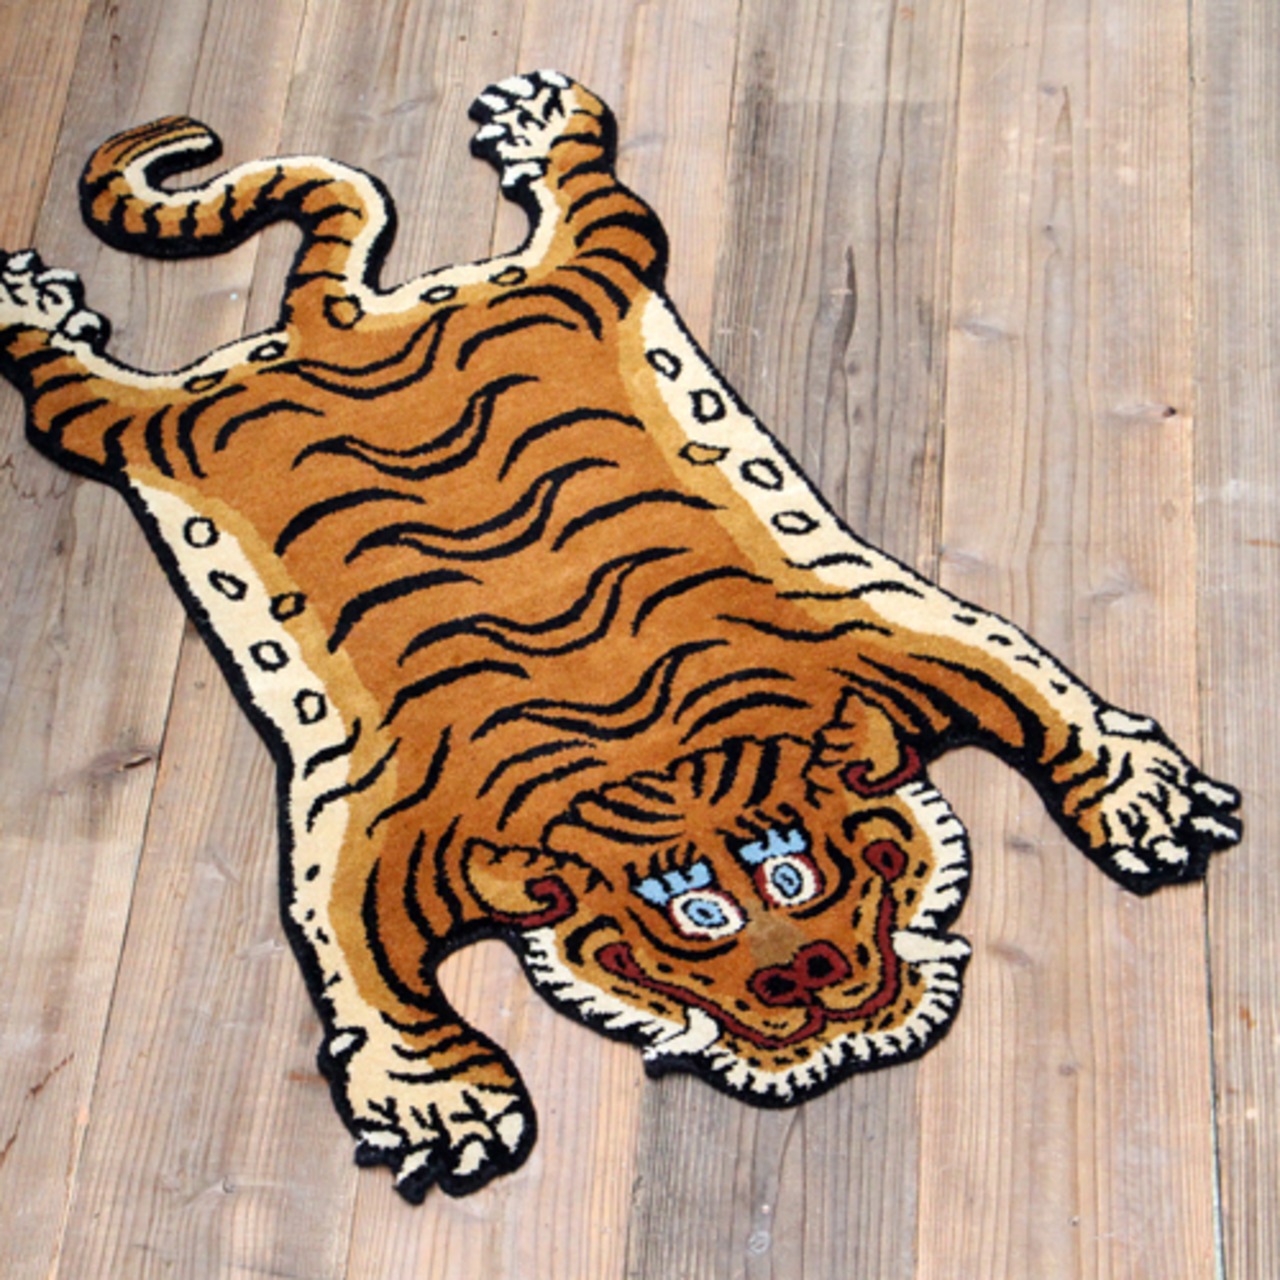 Tibetan Tiger Rug Size XL/タイガーチベタンラグ/ラグ